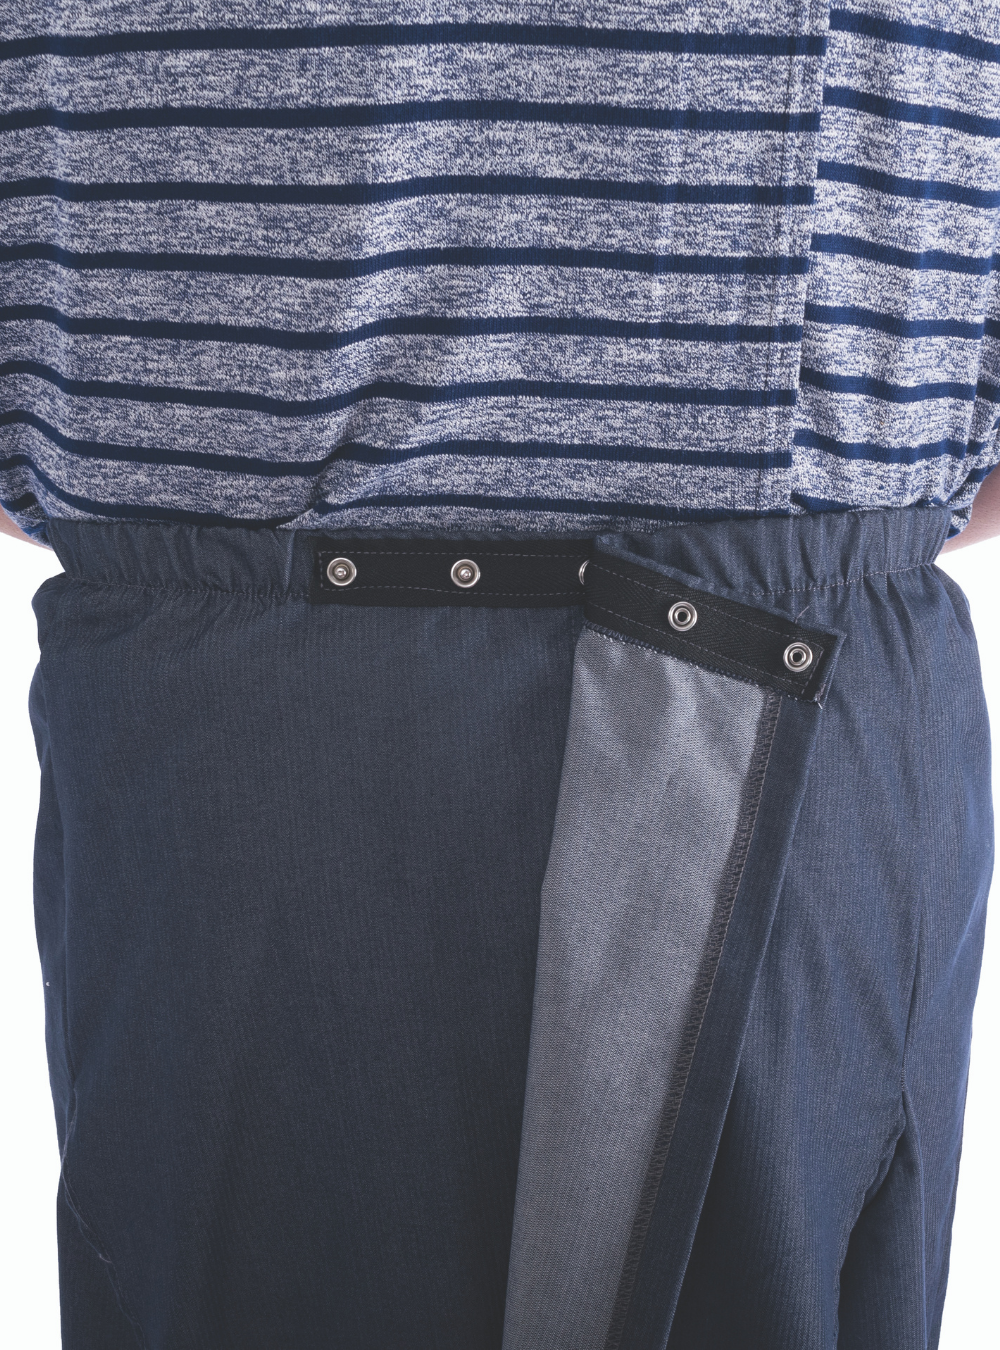 Men's Cozy Knit Open Back Pants